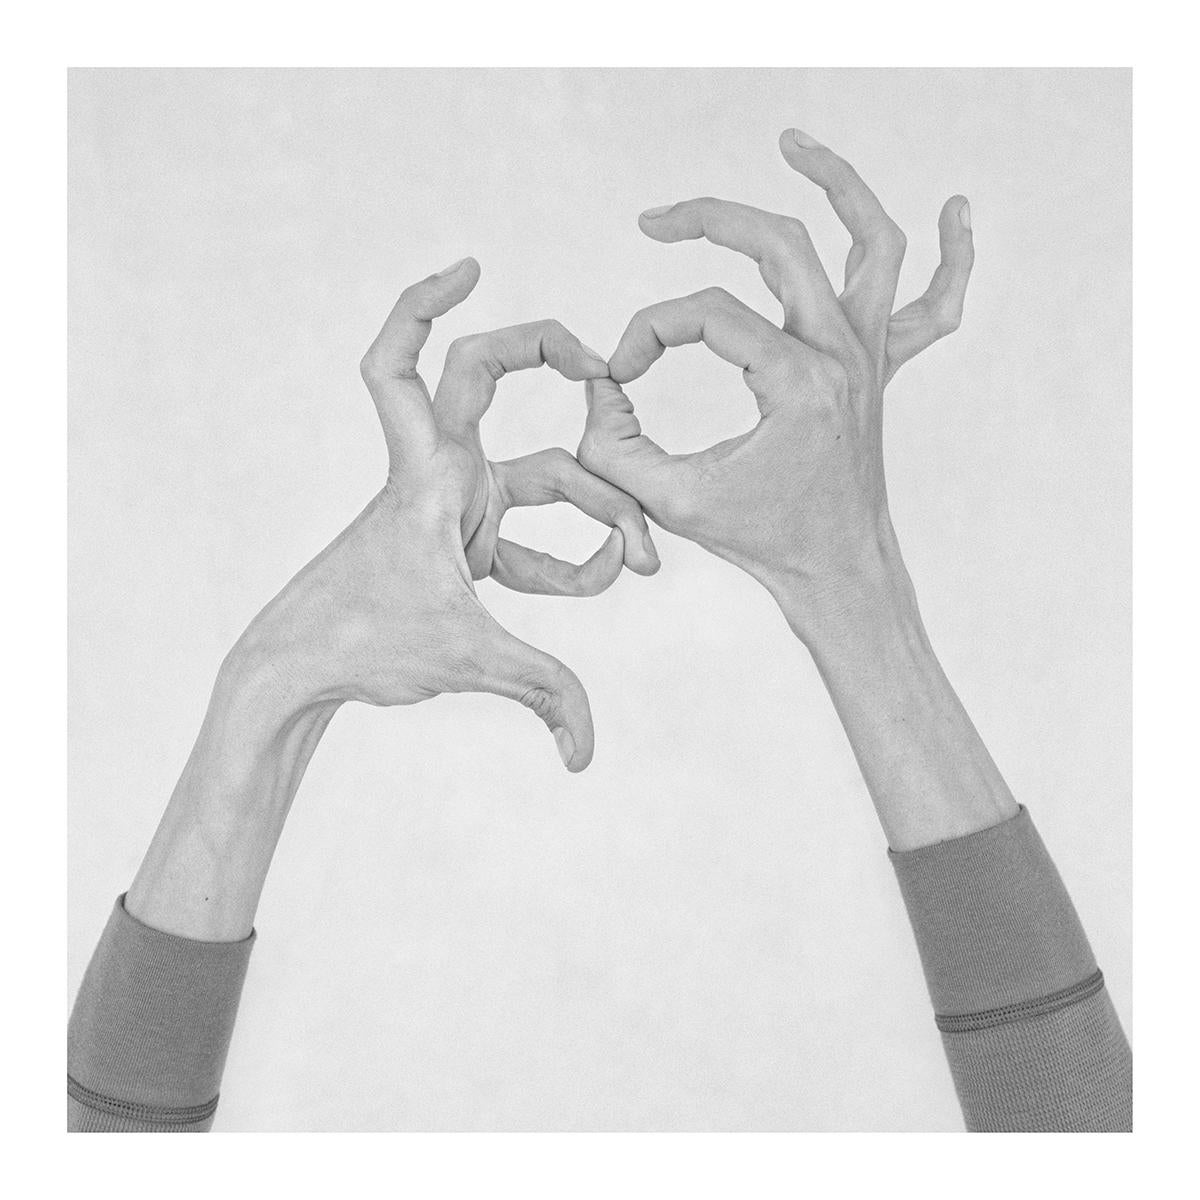 Untitled X, Untitled XXXIX, and Untitled XXIX, Hands. Triptych - Photograph by Nico Baixas / Gos-com-fuig